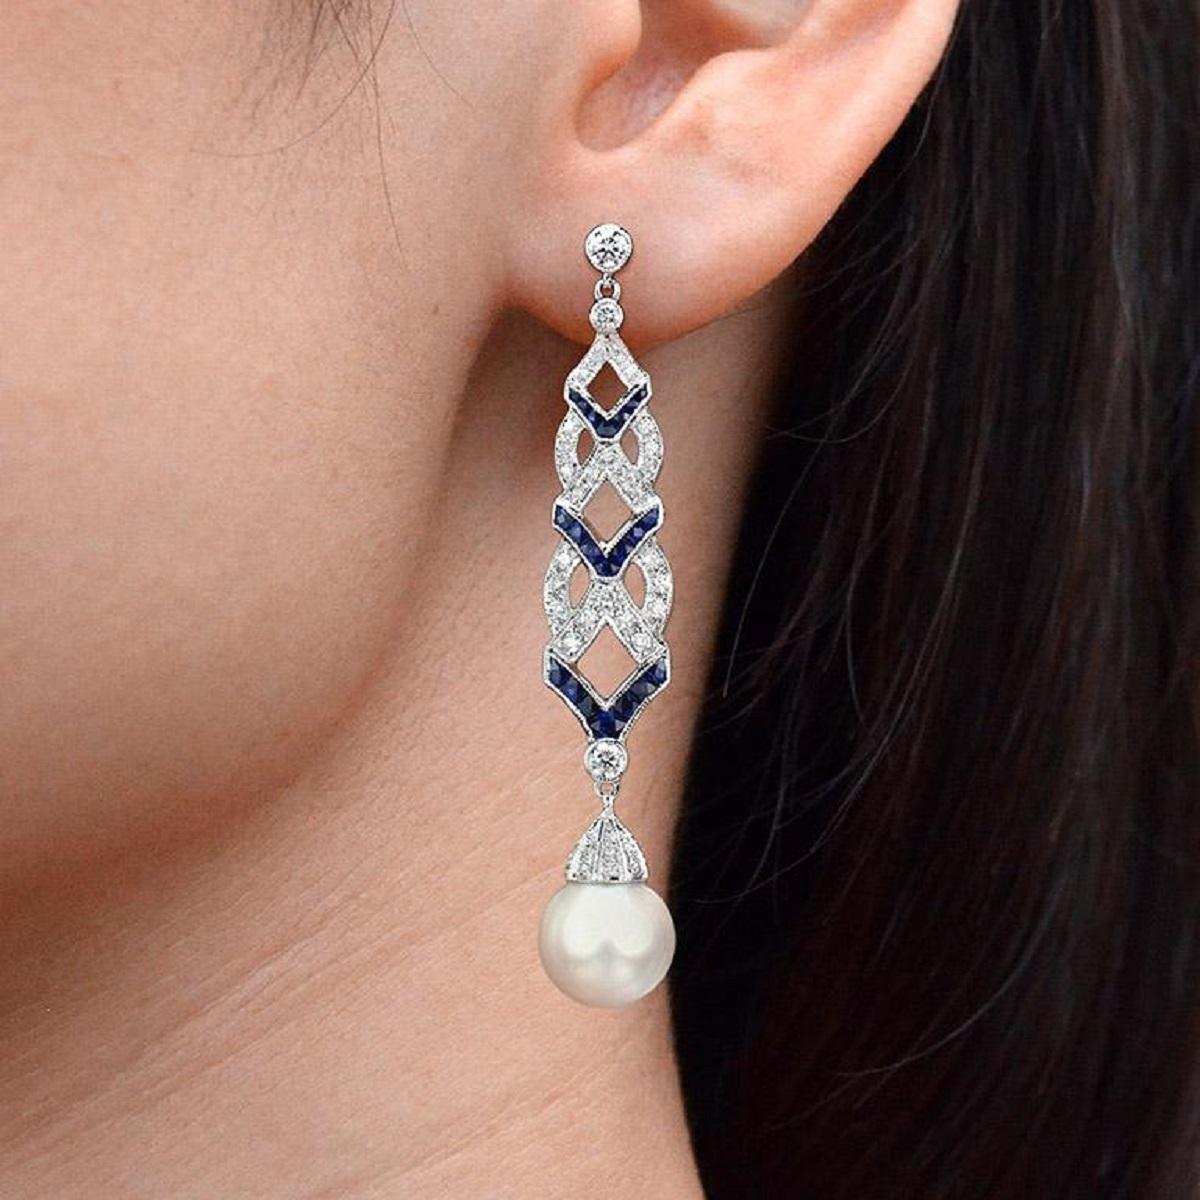 Heben Sie sich von der Masse ab mit diesen hübschen, von Art-Deco inspirierten Ohrringen. An jedem hängt ein Tropfen einer Südseeperle mit einer diamantbesetzten Kappe, darunter gegliederte Linien aus Diamanten und Saphiren. 

Informationen
Stil: